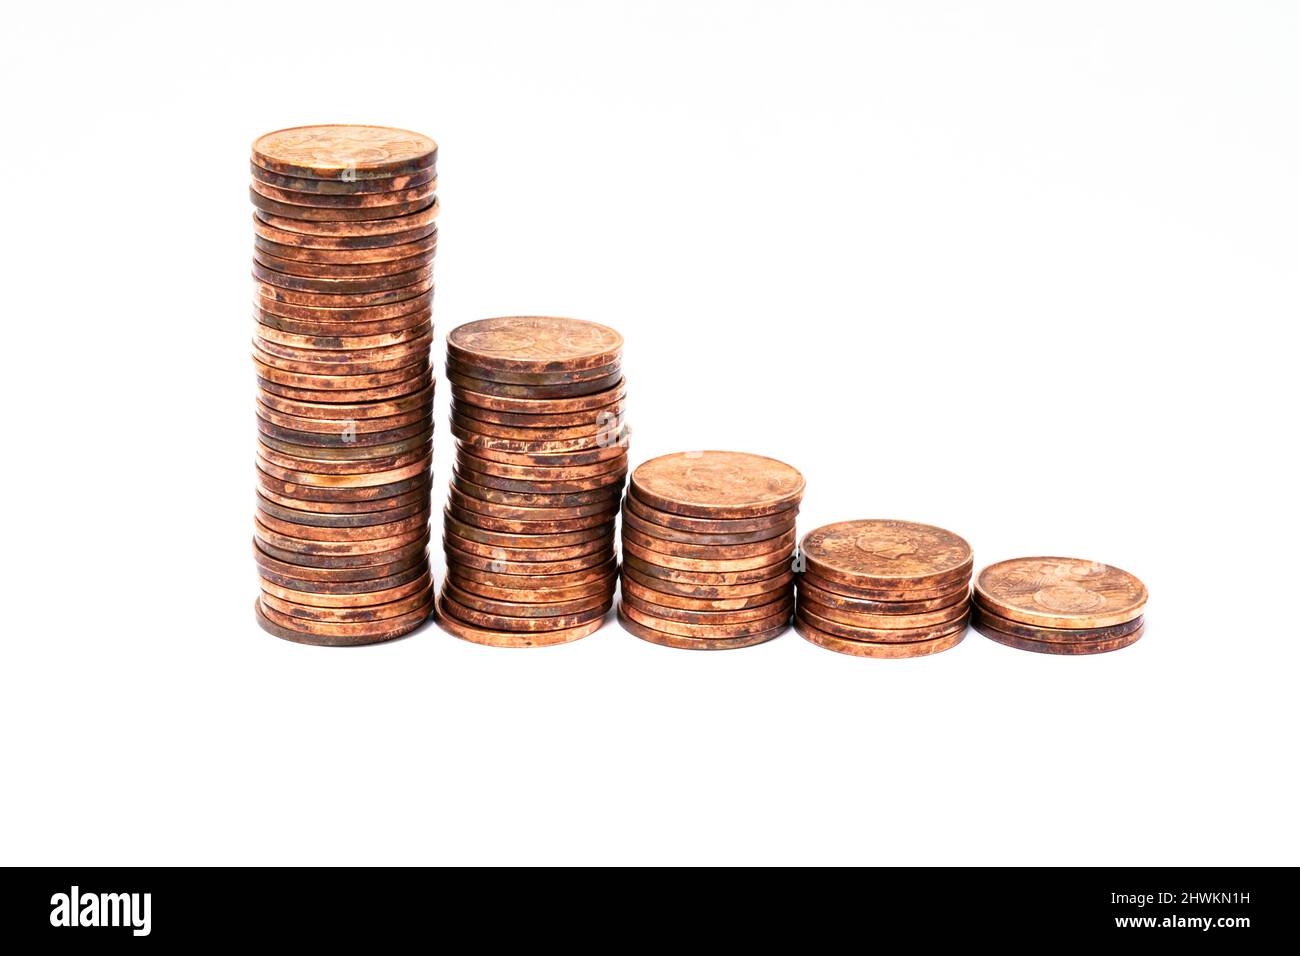 Stapel von Kupfermünzen, die in der Höhe abnehmen. Symbolisch für Währungsabwertung oder Inflation. Stockfoto